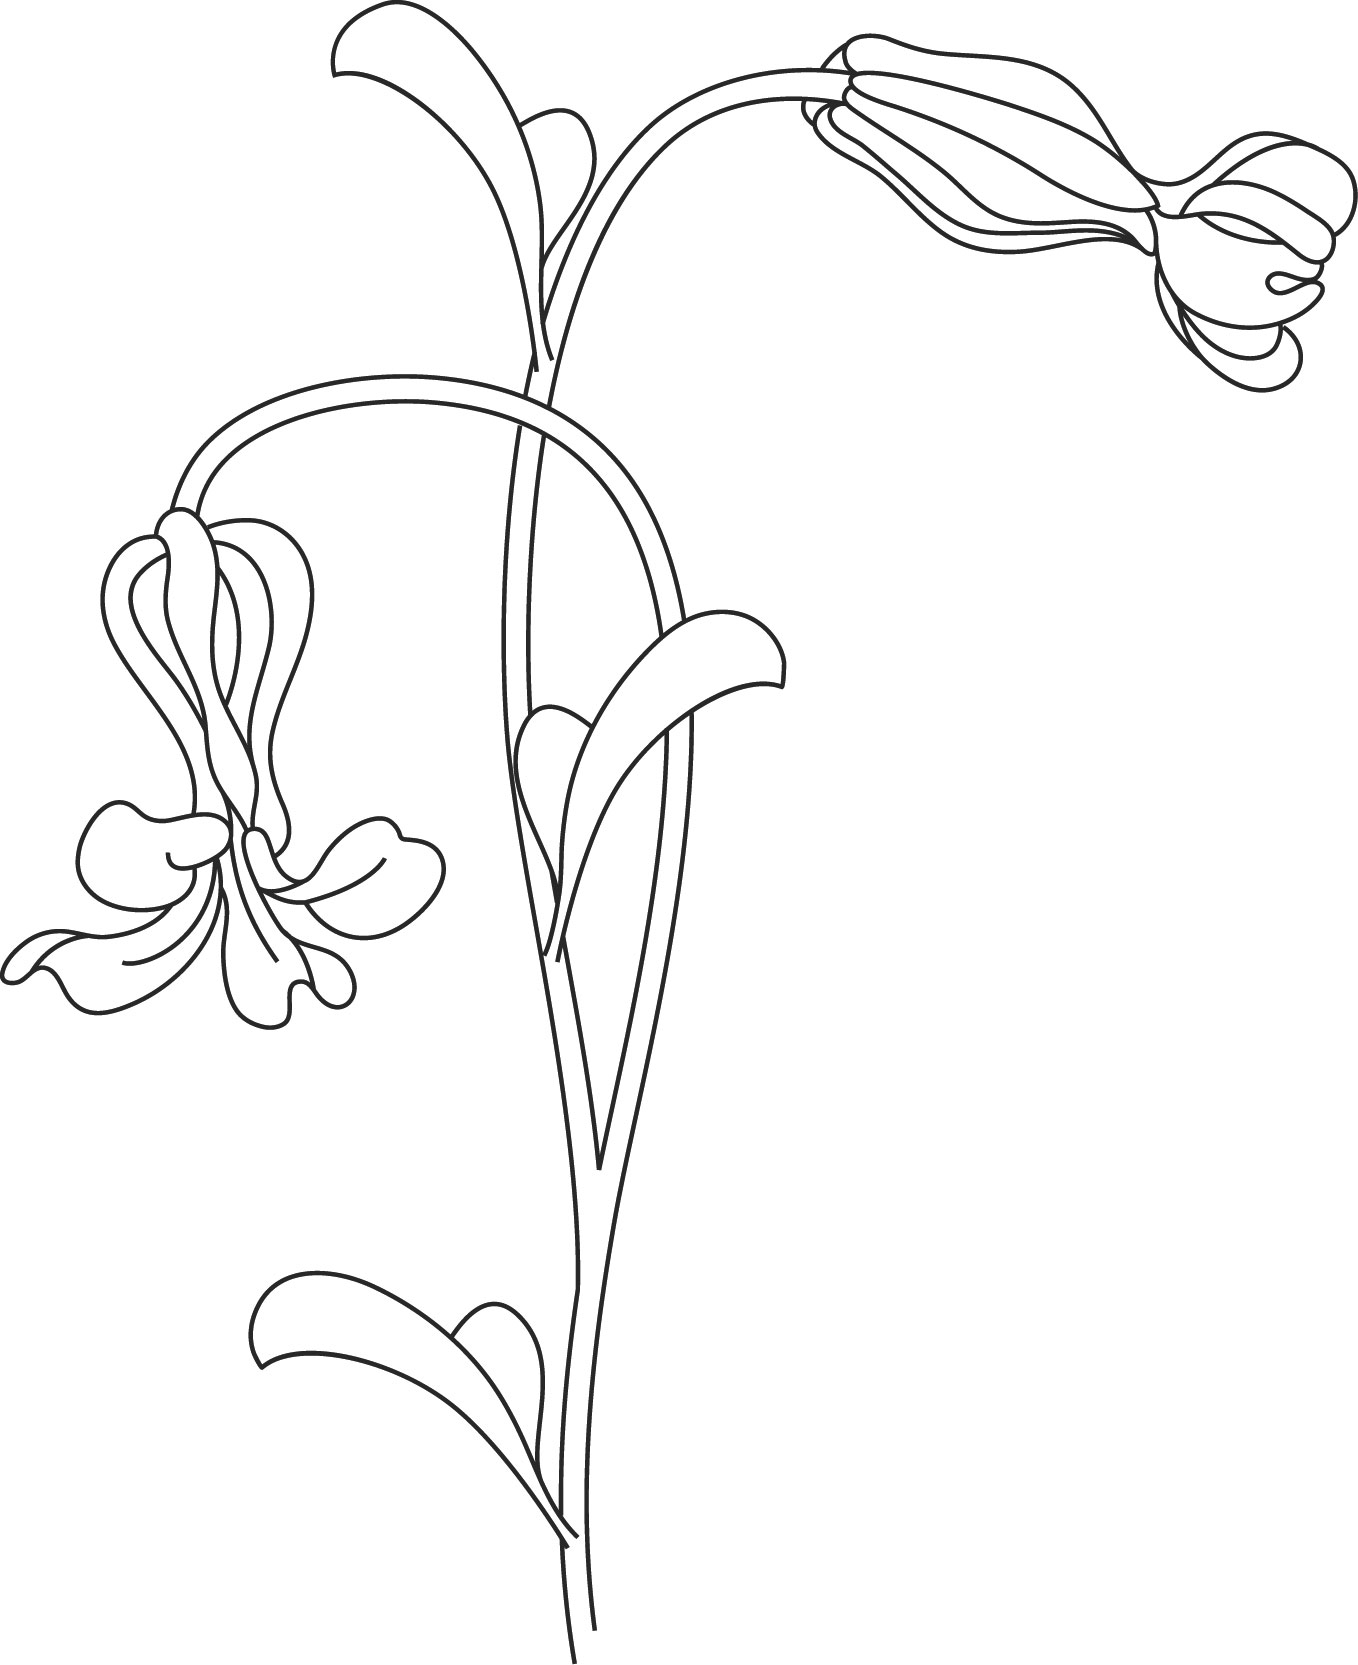 ポップでかわいい花のイラスト フリー素材 No 1350 白黒 透過色